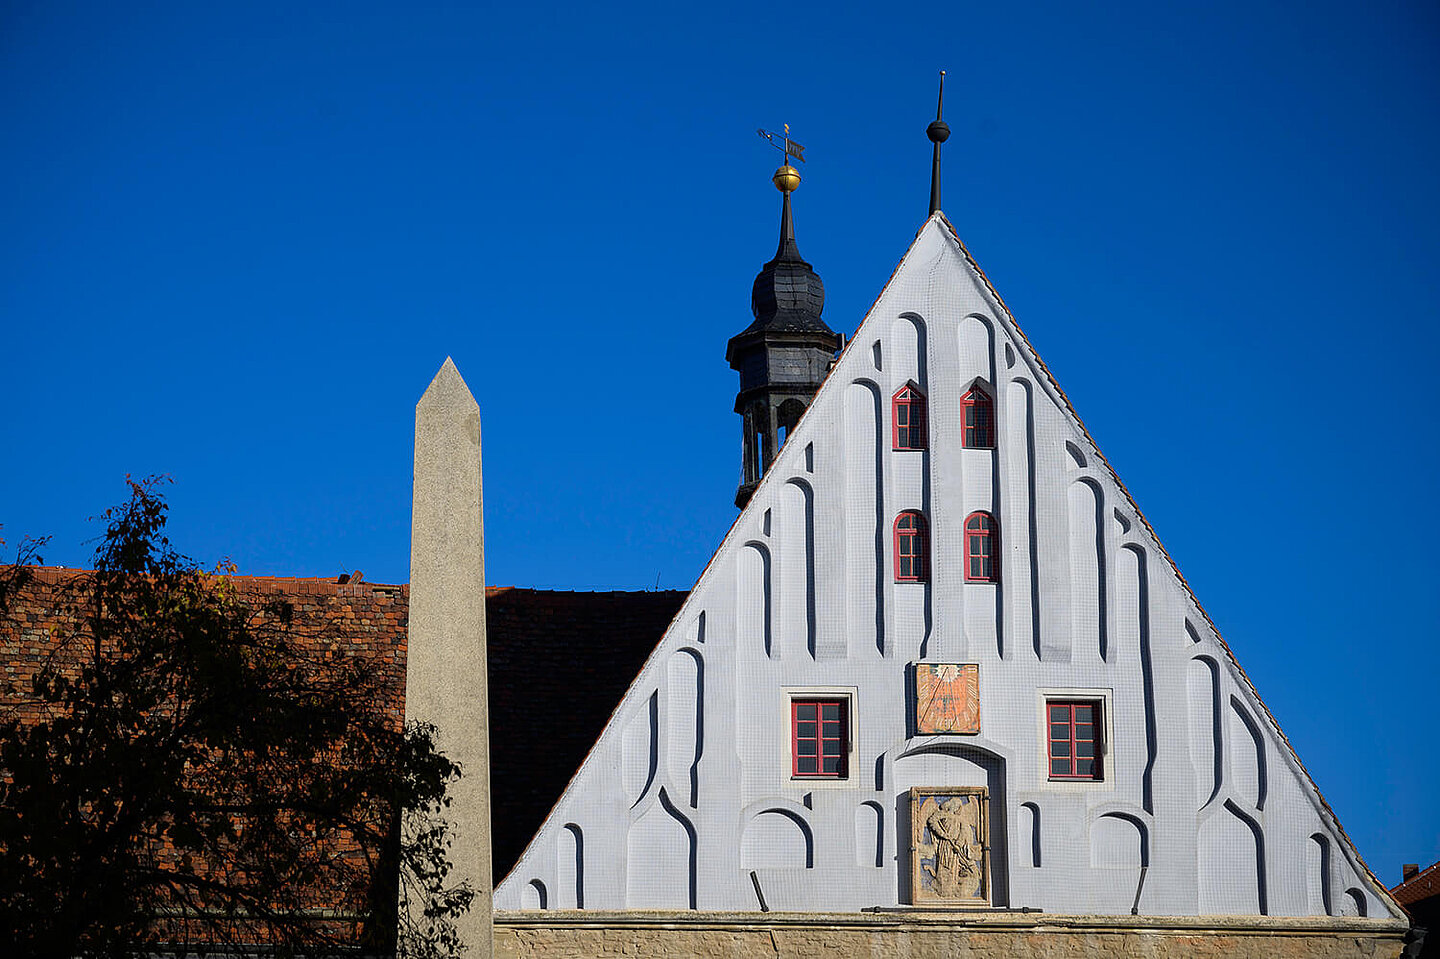 Die Giebelwand vom Buttstaedter Rathaus mit Glockenturm und einem Obelisk